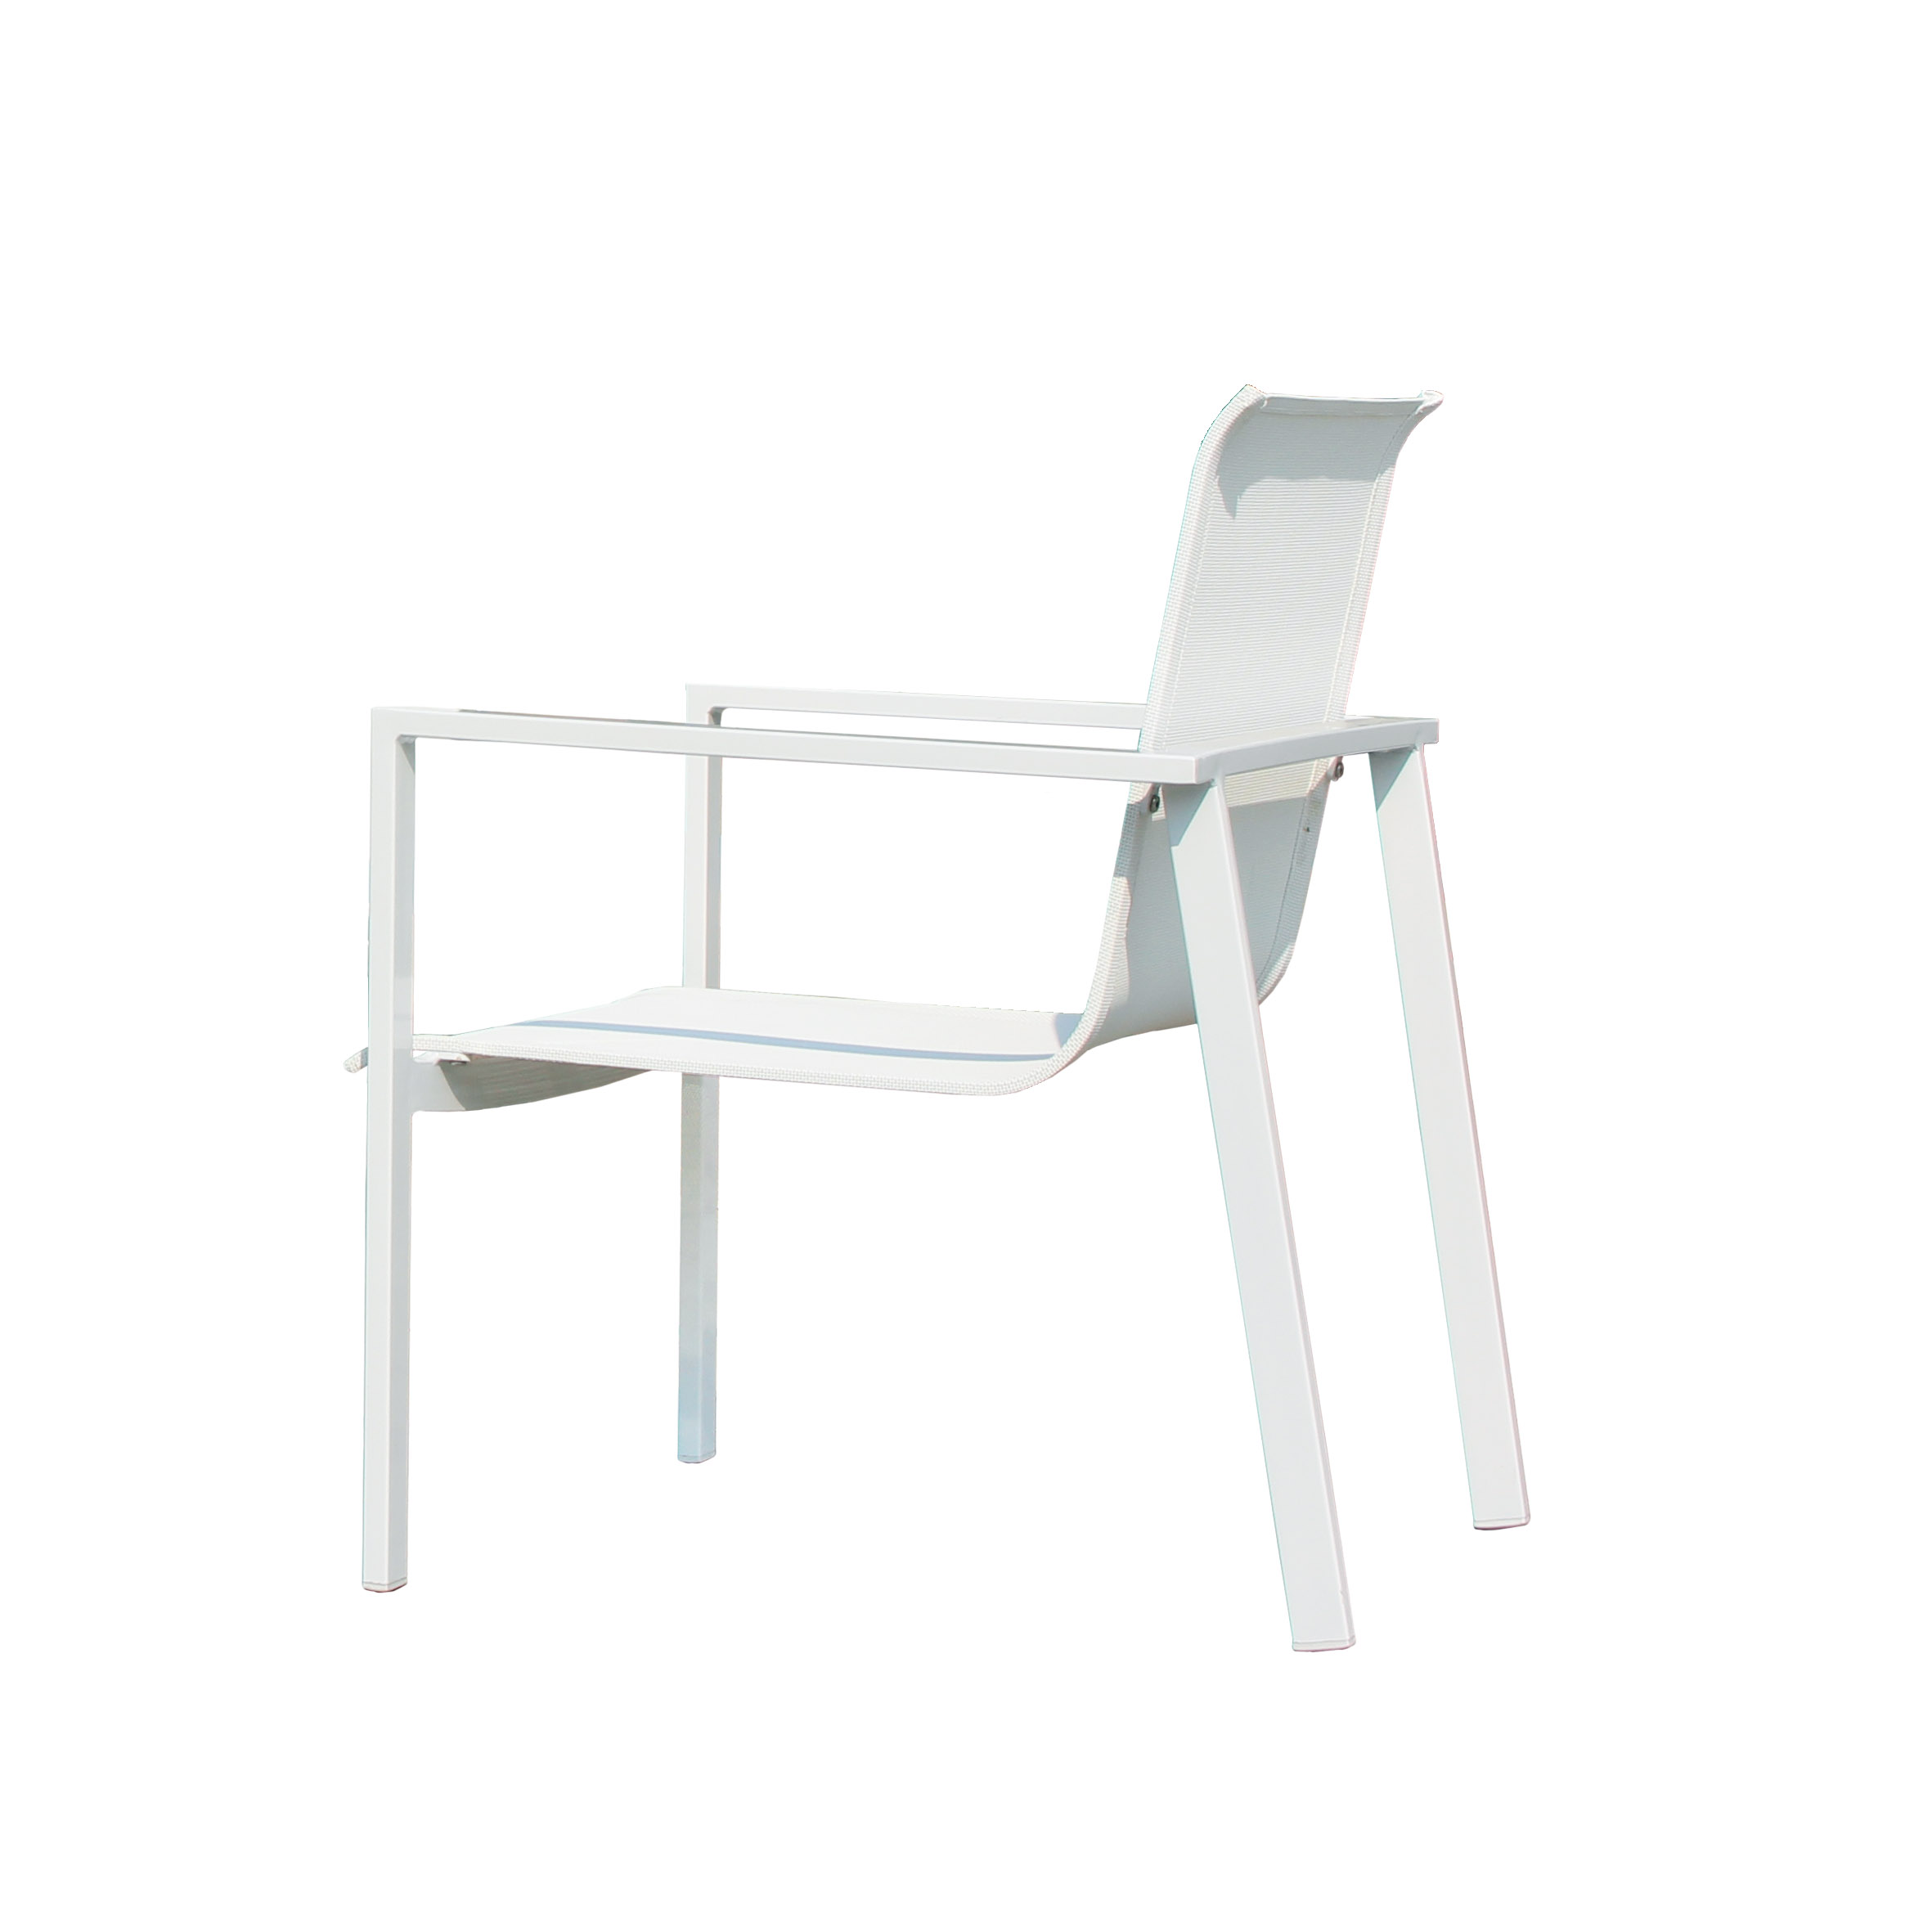 Valencia textile leisure chair S2